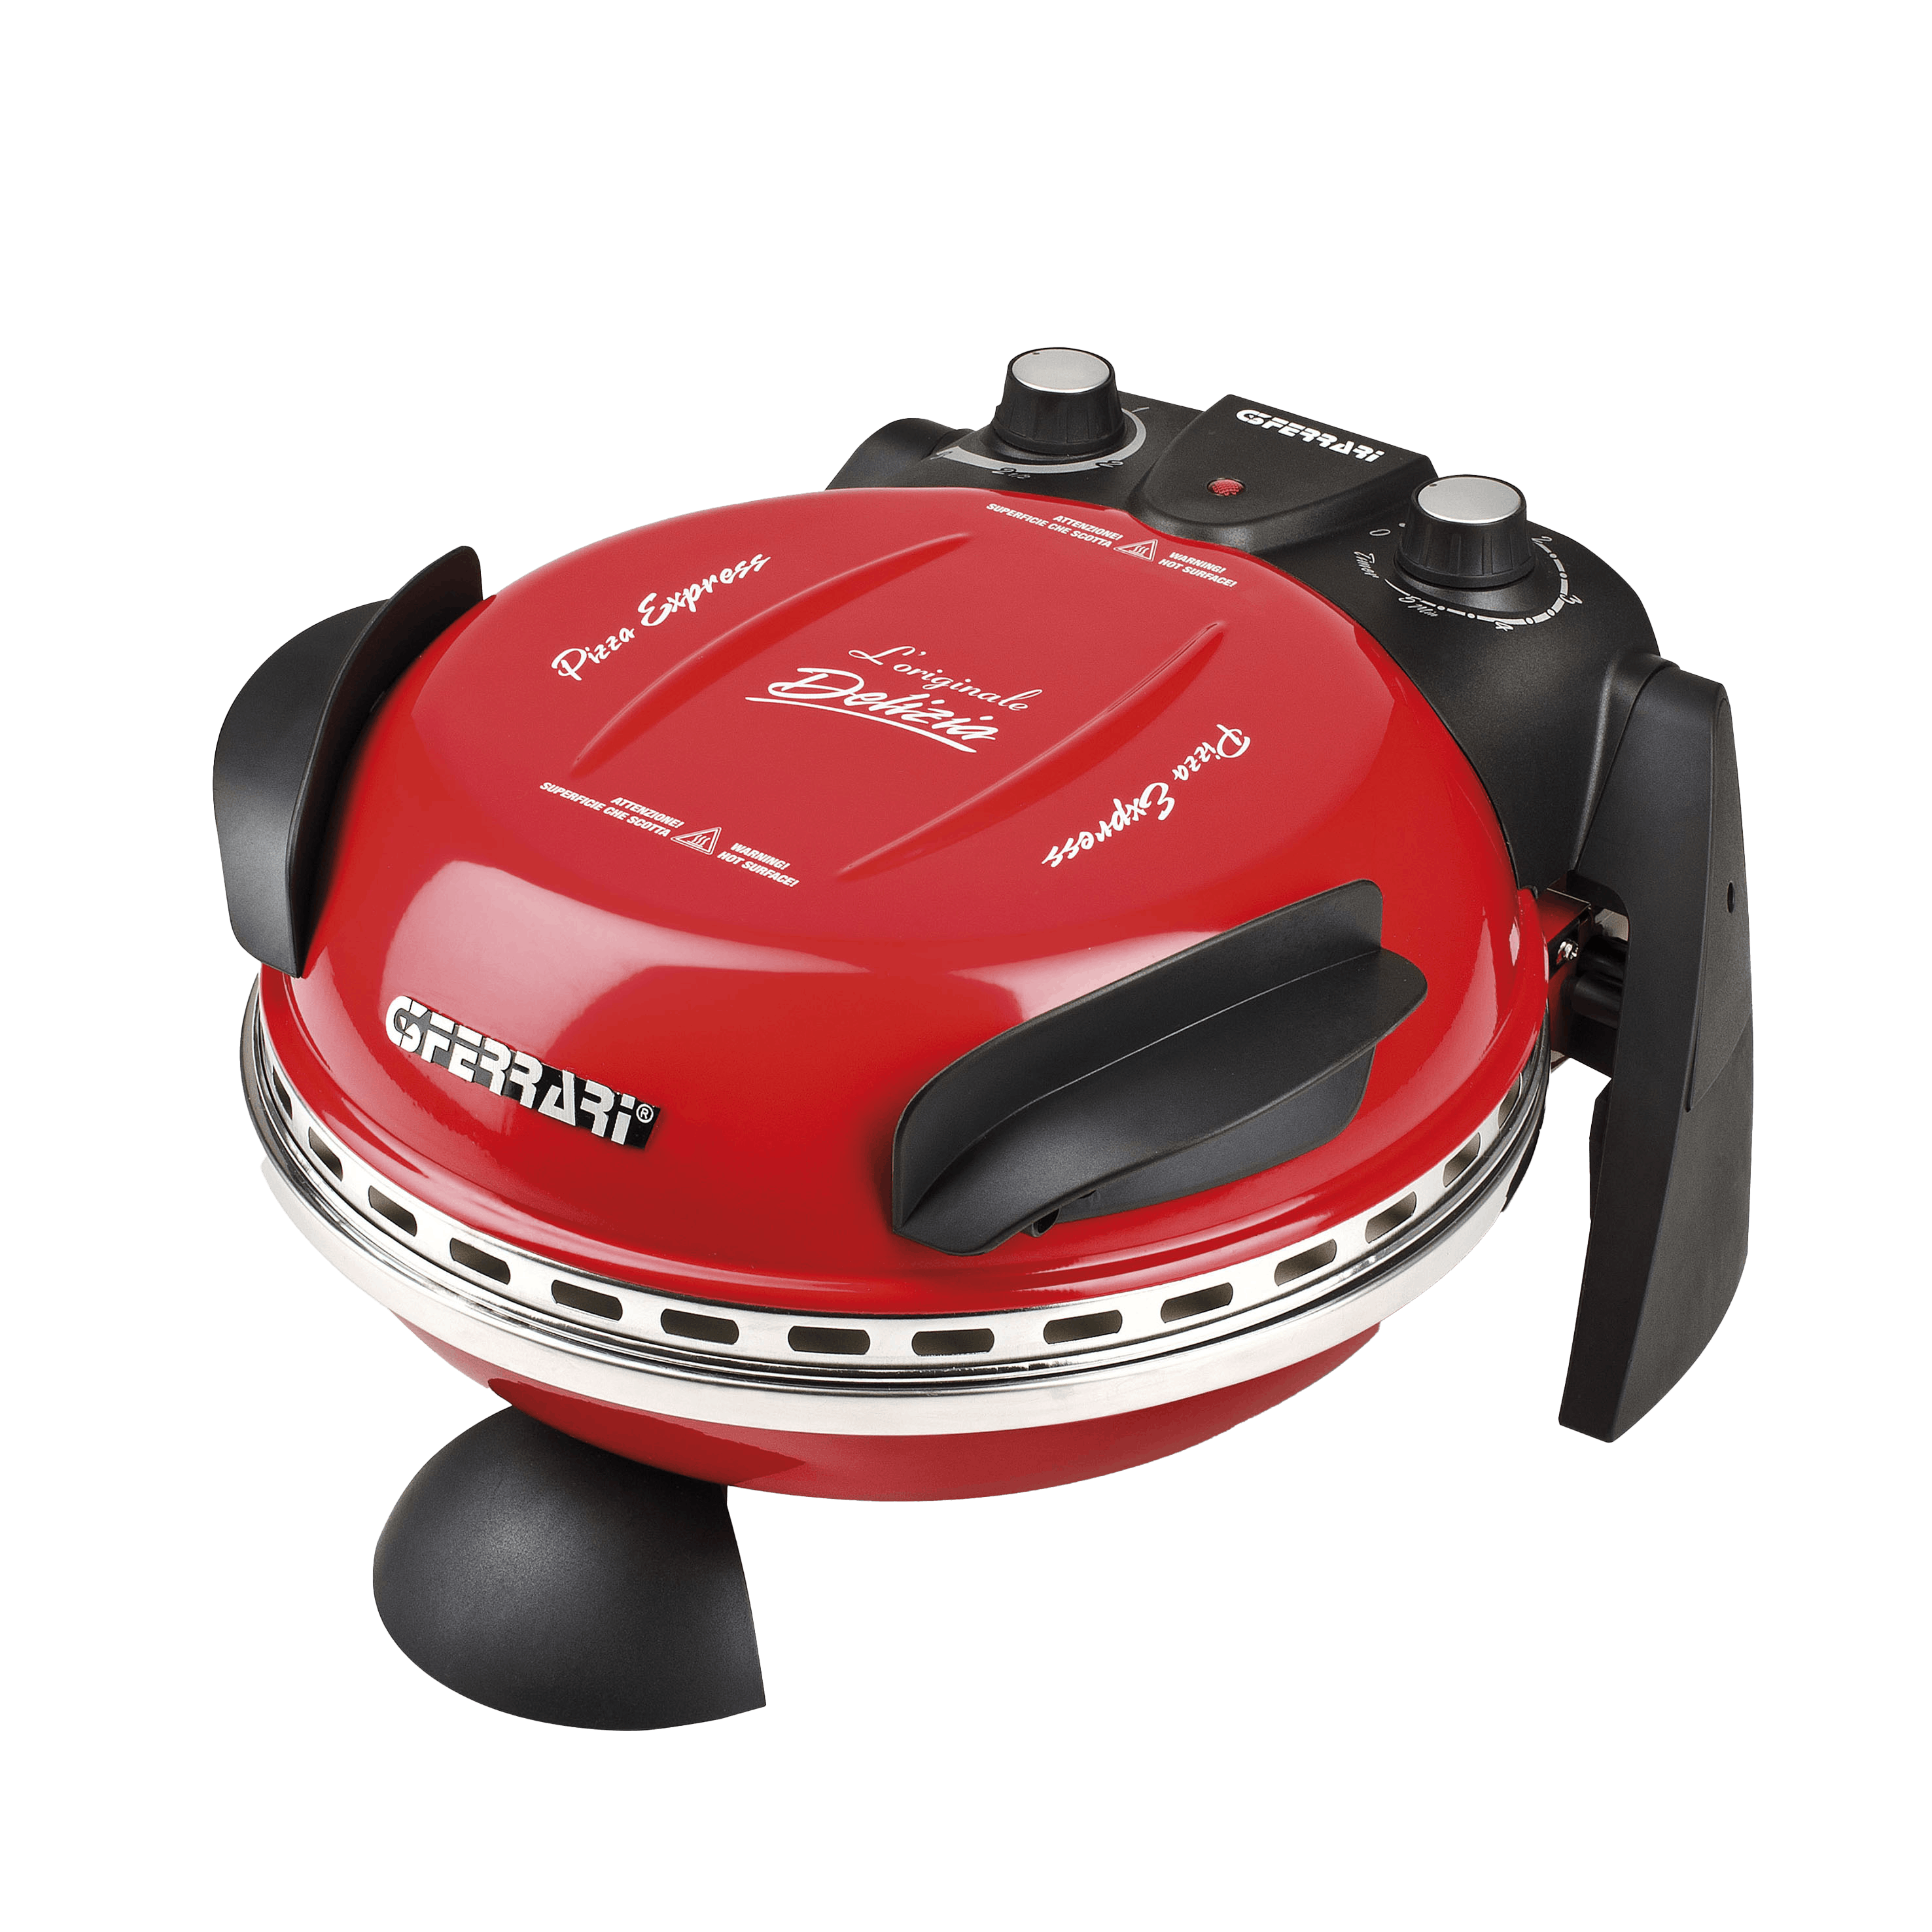 Elektr. Pizzaofen G3 Ferrari Delizia rot G1000602 bis 400 Grad mit  feuerfestem Pizzastein / Pizza, Fladen uvm. in 3 Minuten / 1200 Watt